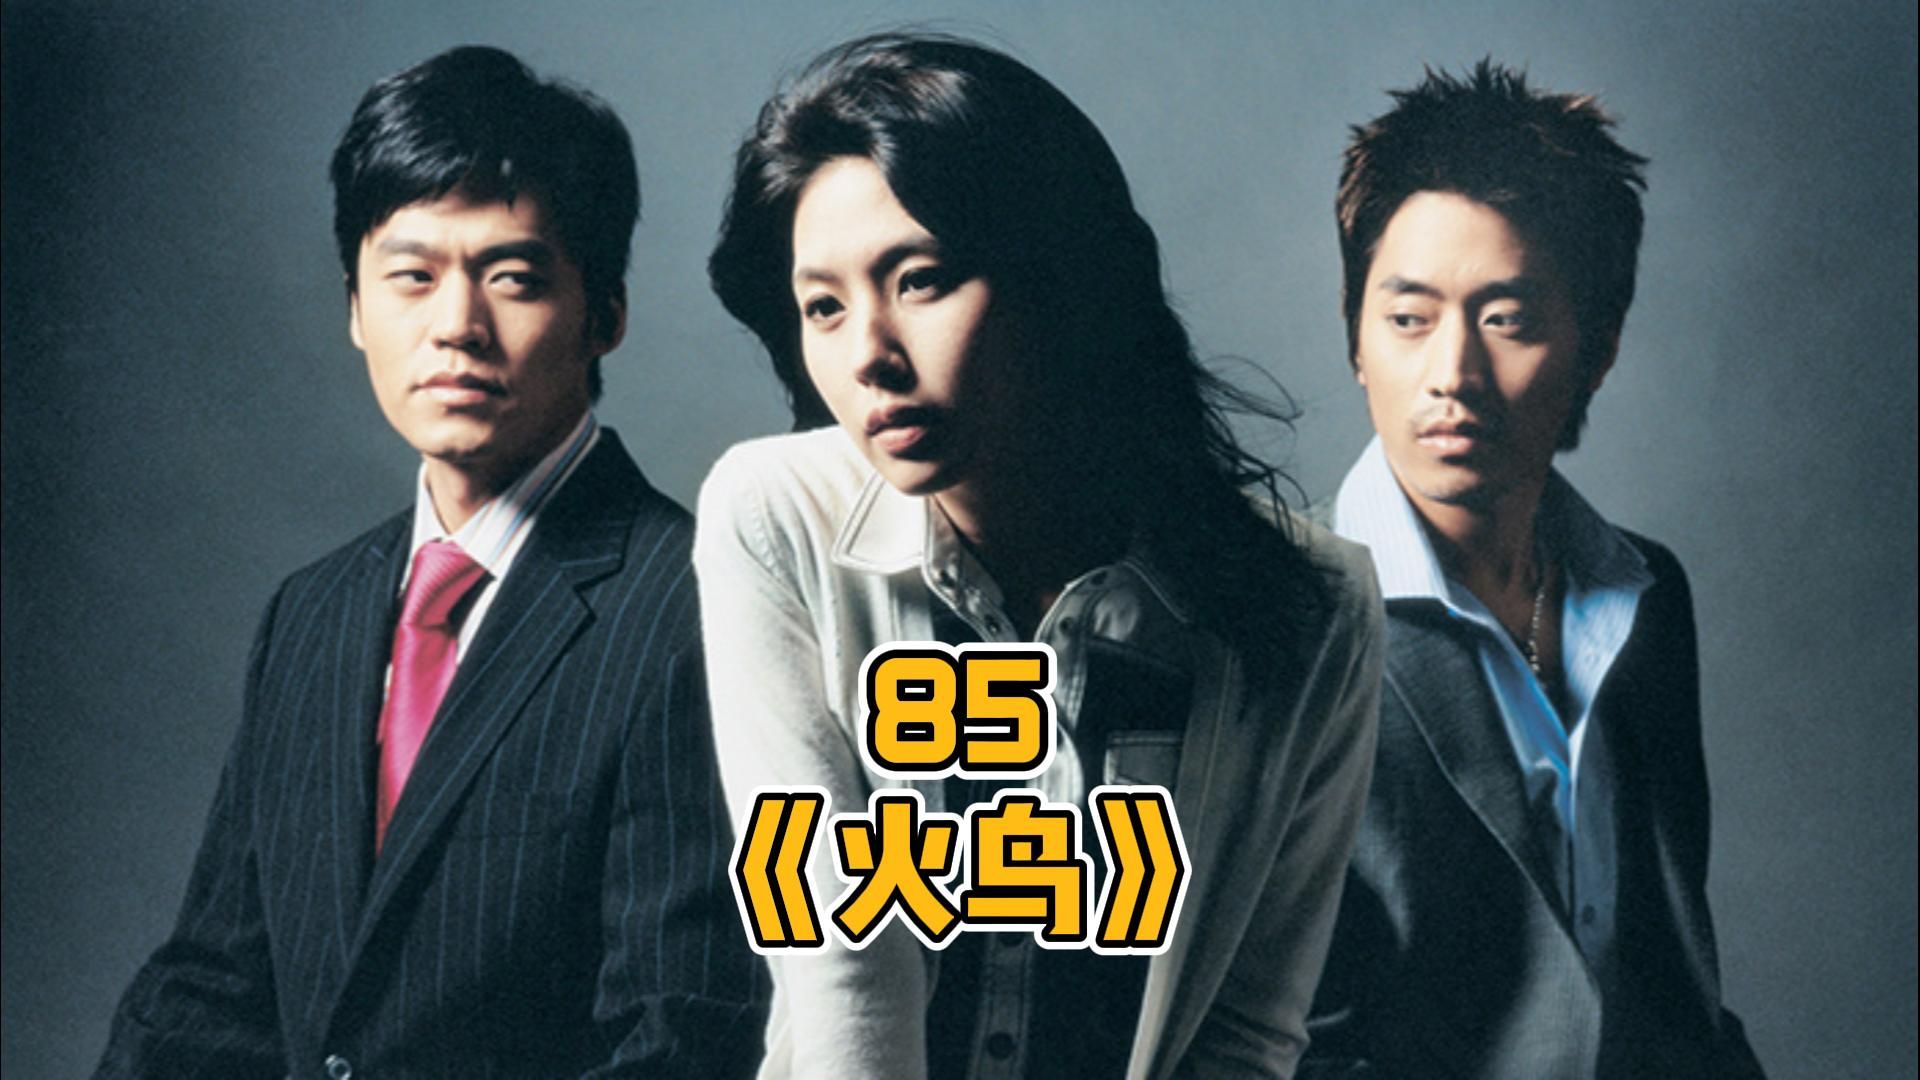 韩剧《火鸟》85:为了拿回父亲的犯罪证据,男人竟绑架了自己深爱的女人